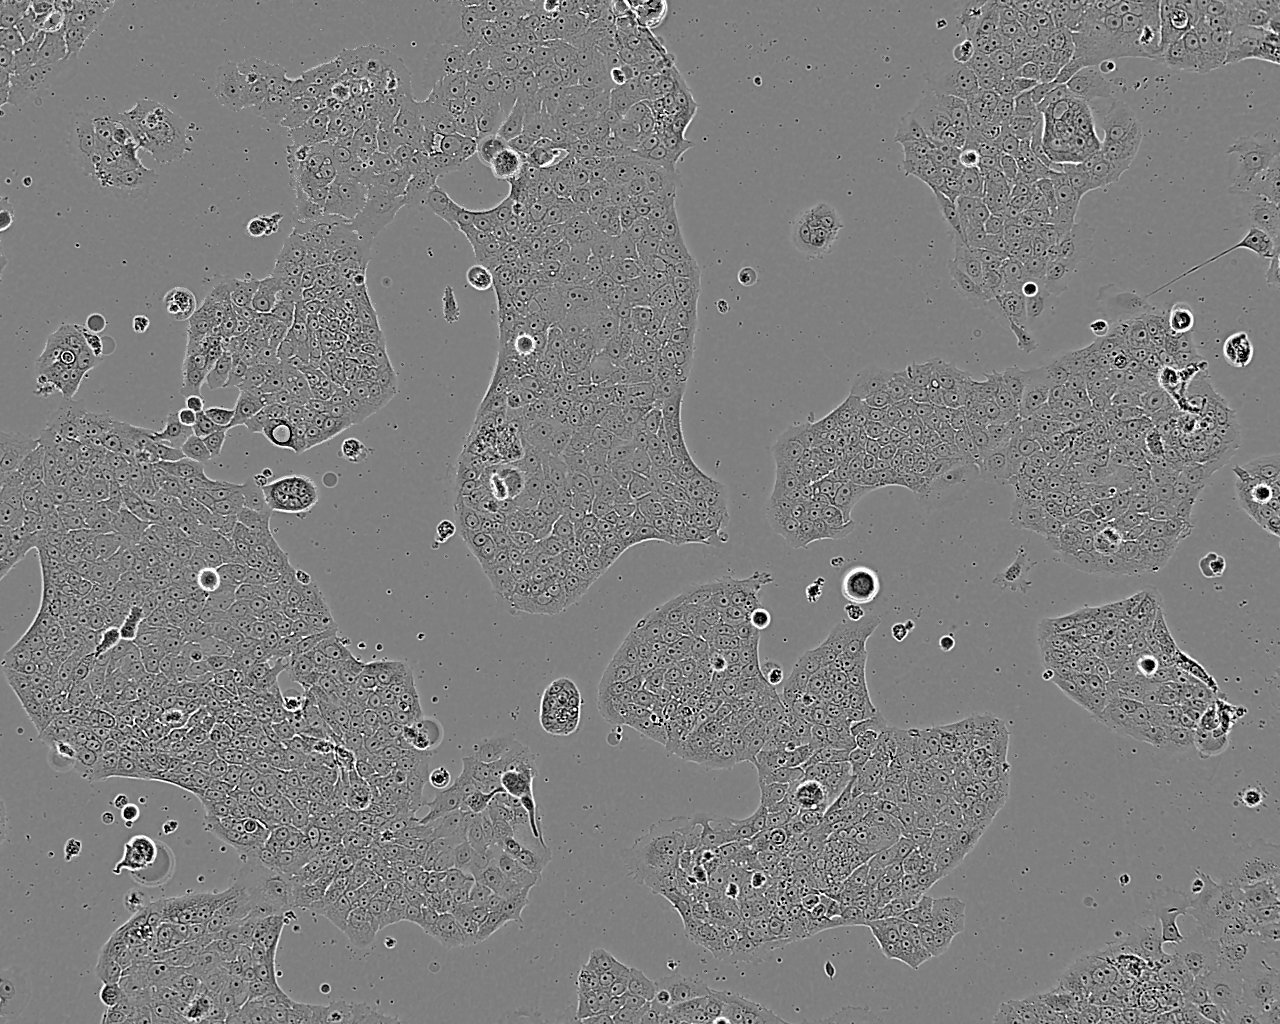 VMRC-RCZ epithelioid cells人肾细胞癌细胞系